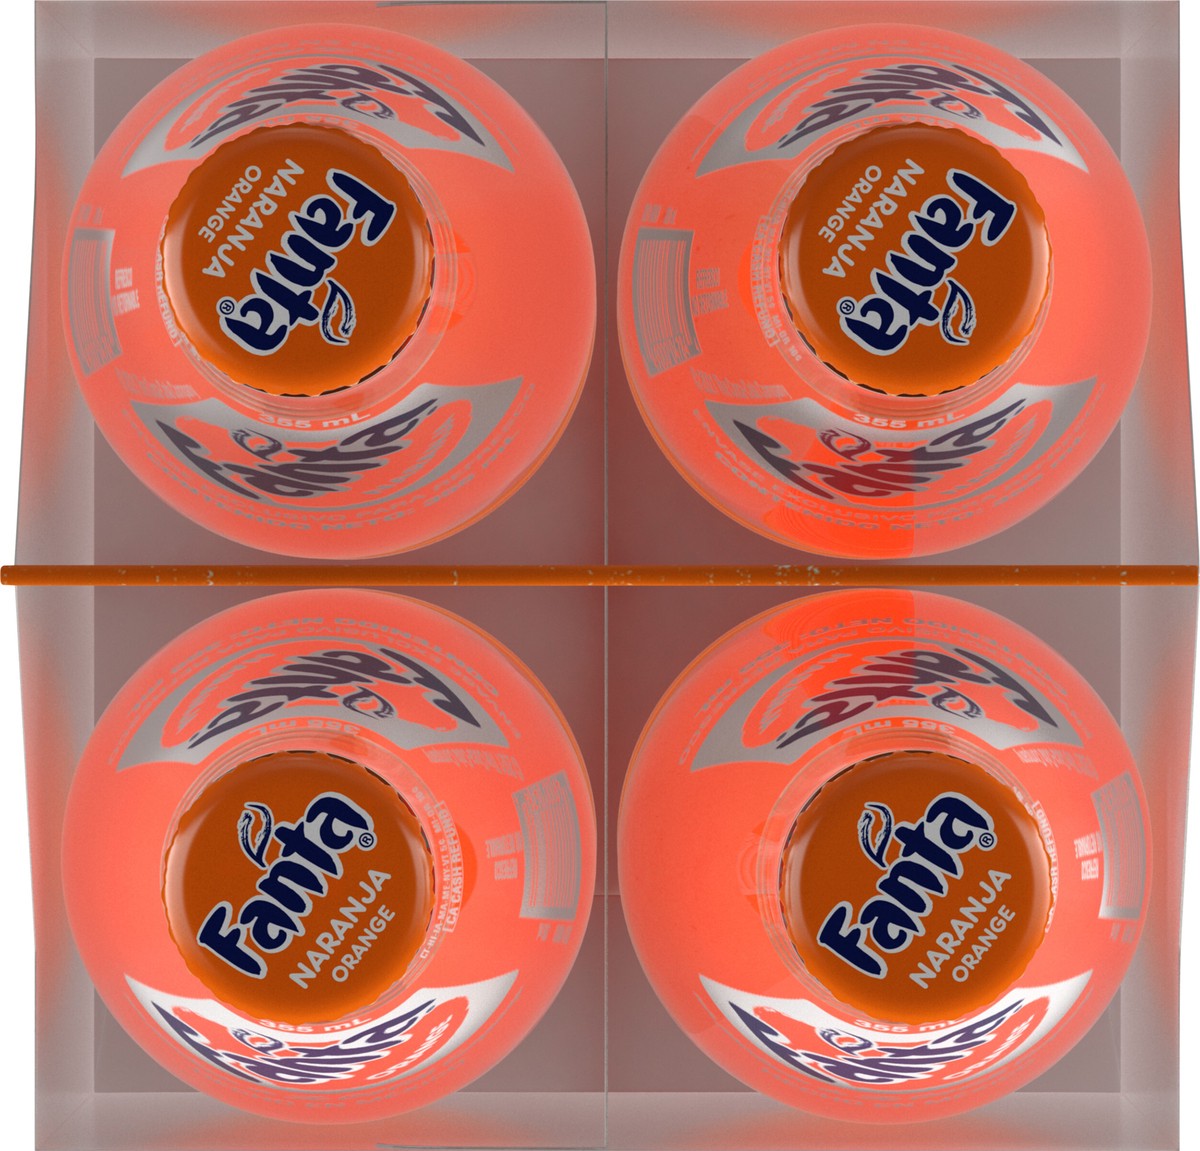 slide 9 of 11, Fanta Orange Mexico Glass Bottles, 355 mL, 4 Pack, 4 ct; 12 oz